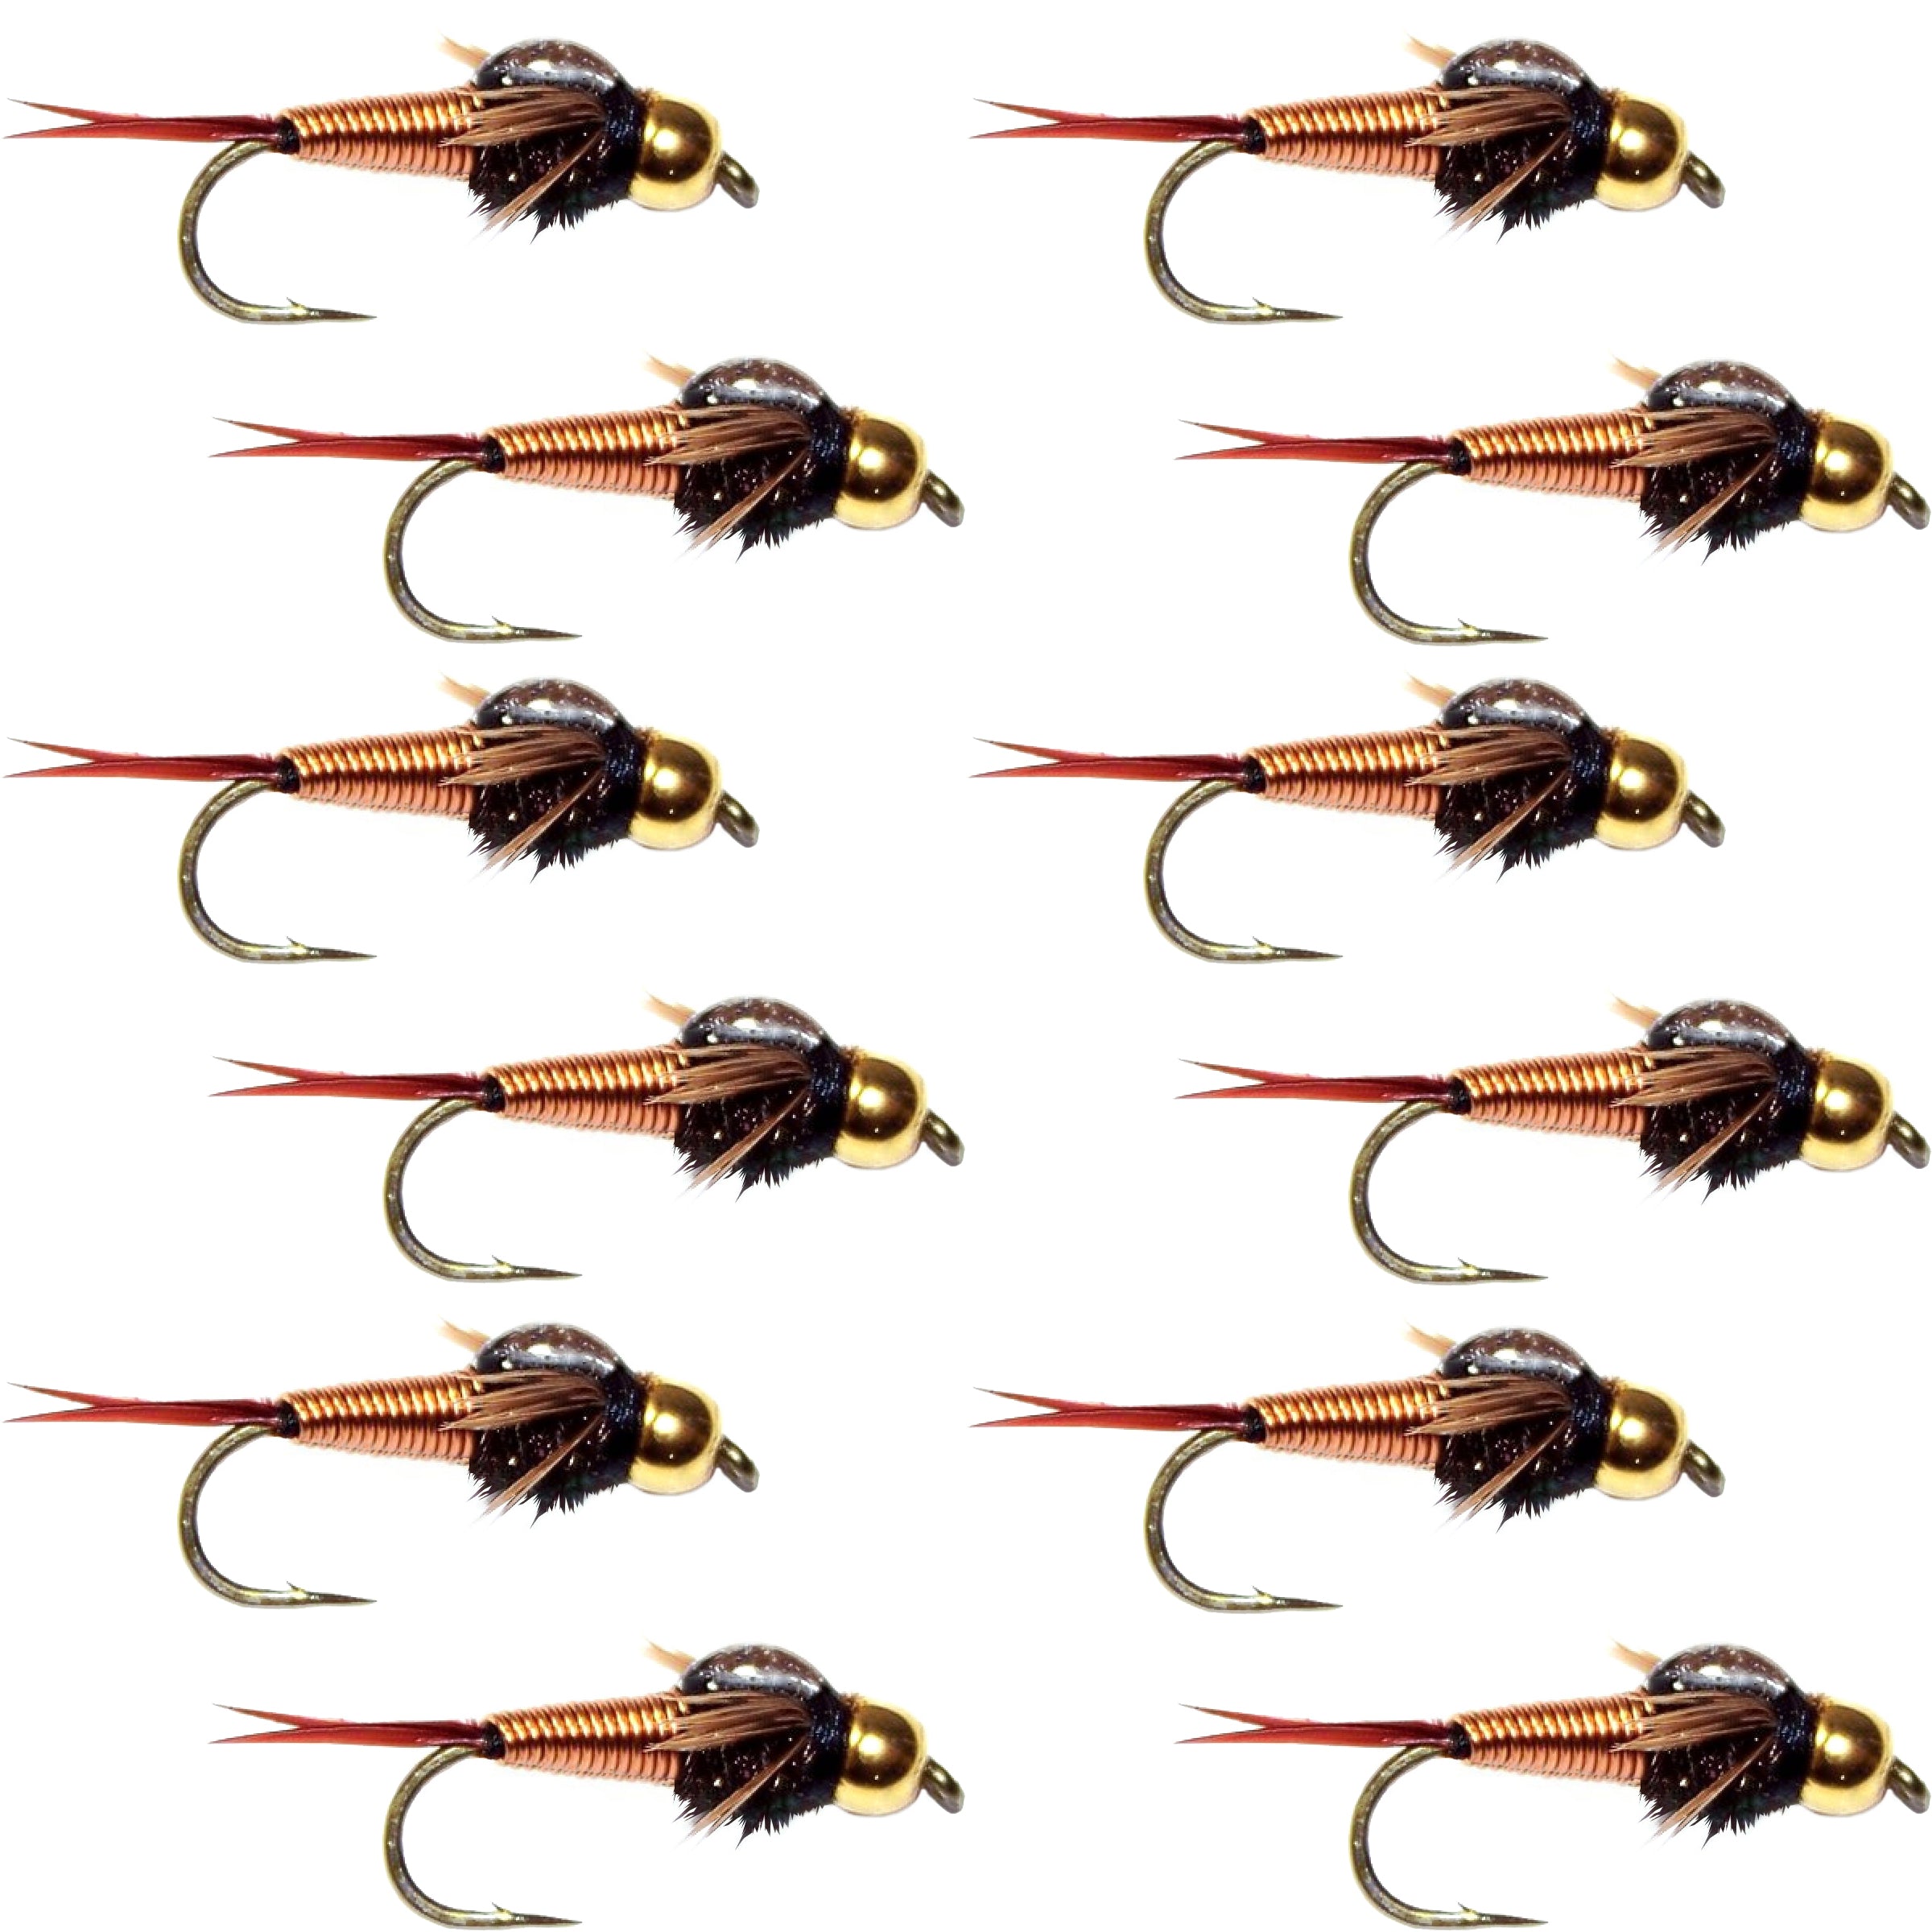 Tungsten Bead Head Copper John Nymph 1 Dozen Fly Fishing Flies - Hook Size 16